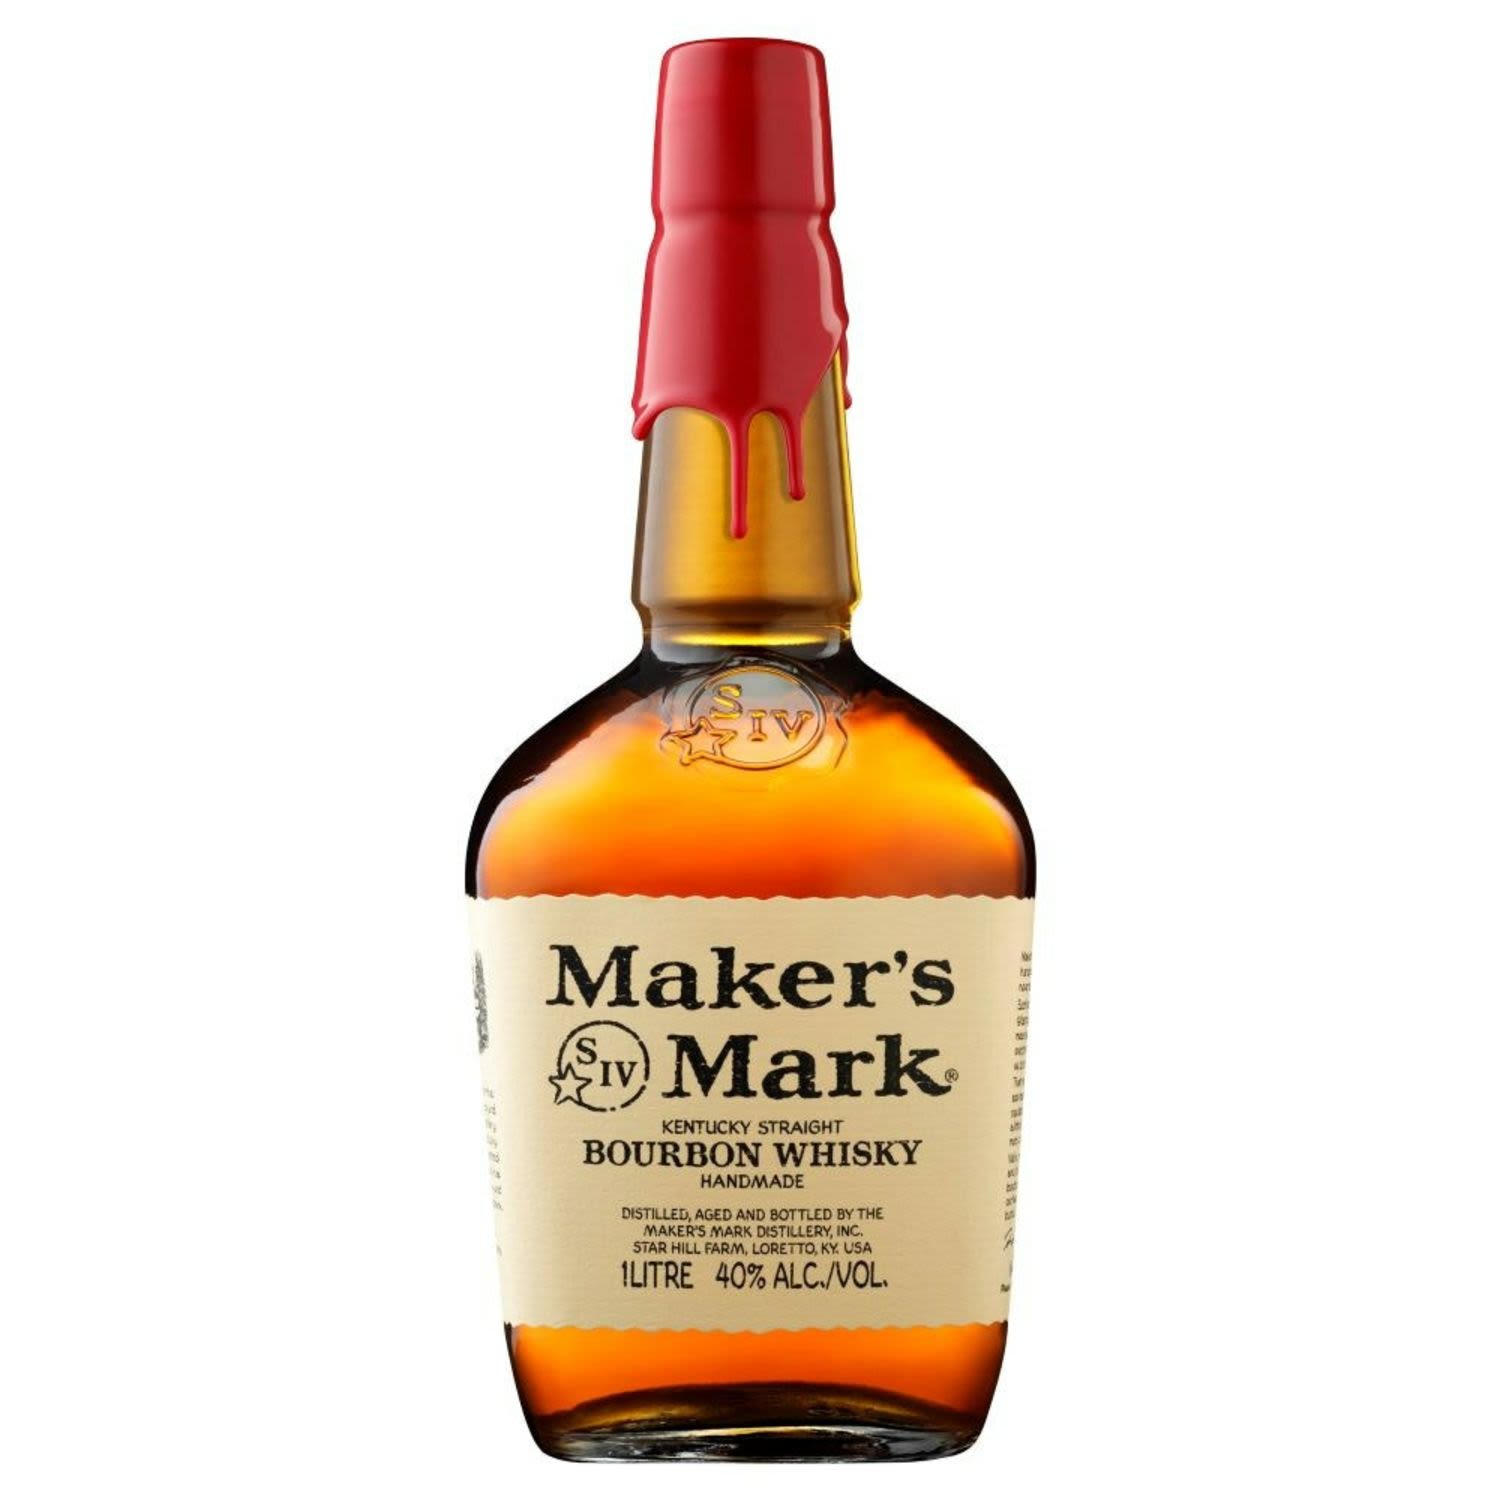 Maker's Mark Kentucky Straight Bourbon Whisky 1L Bottle